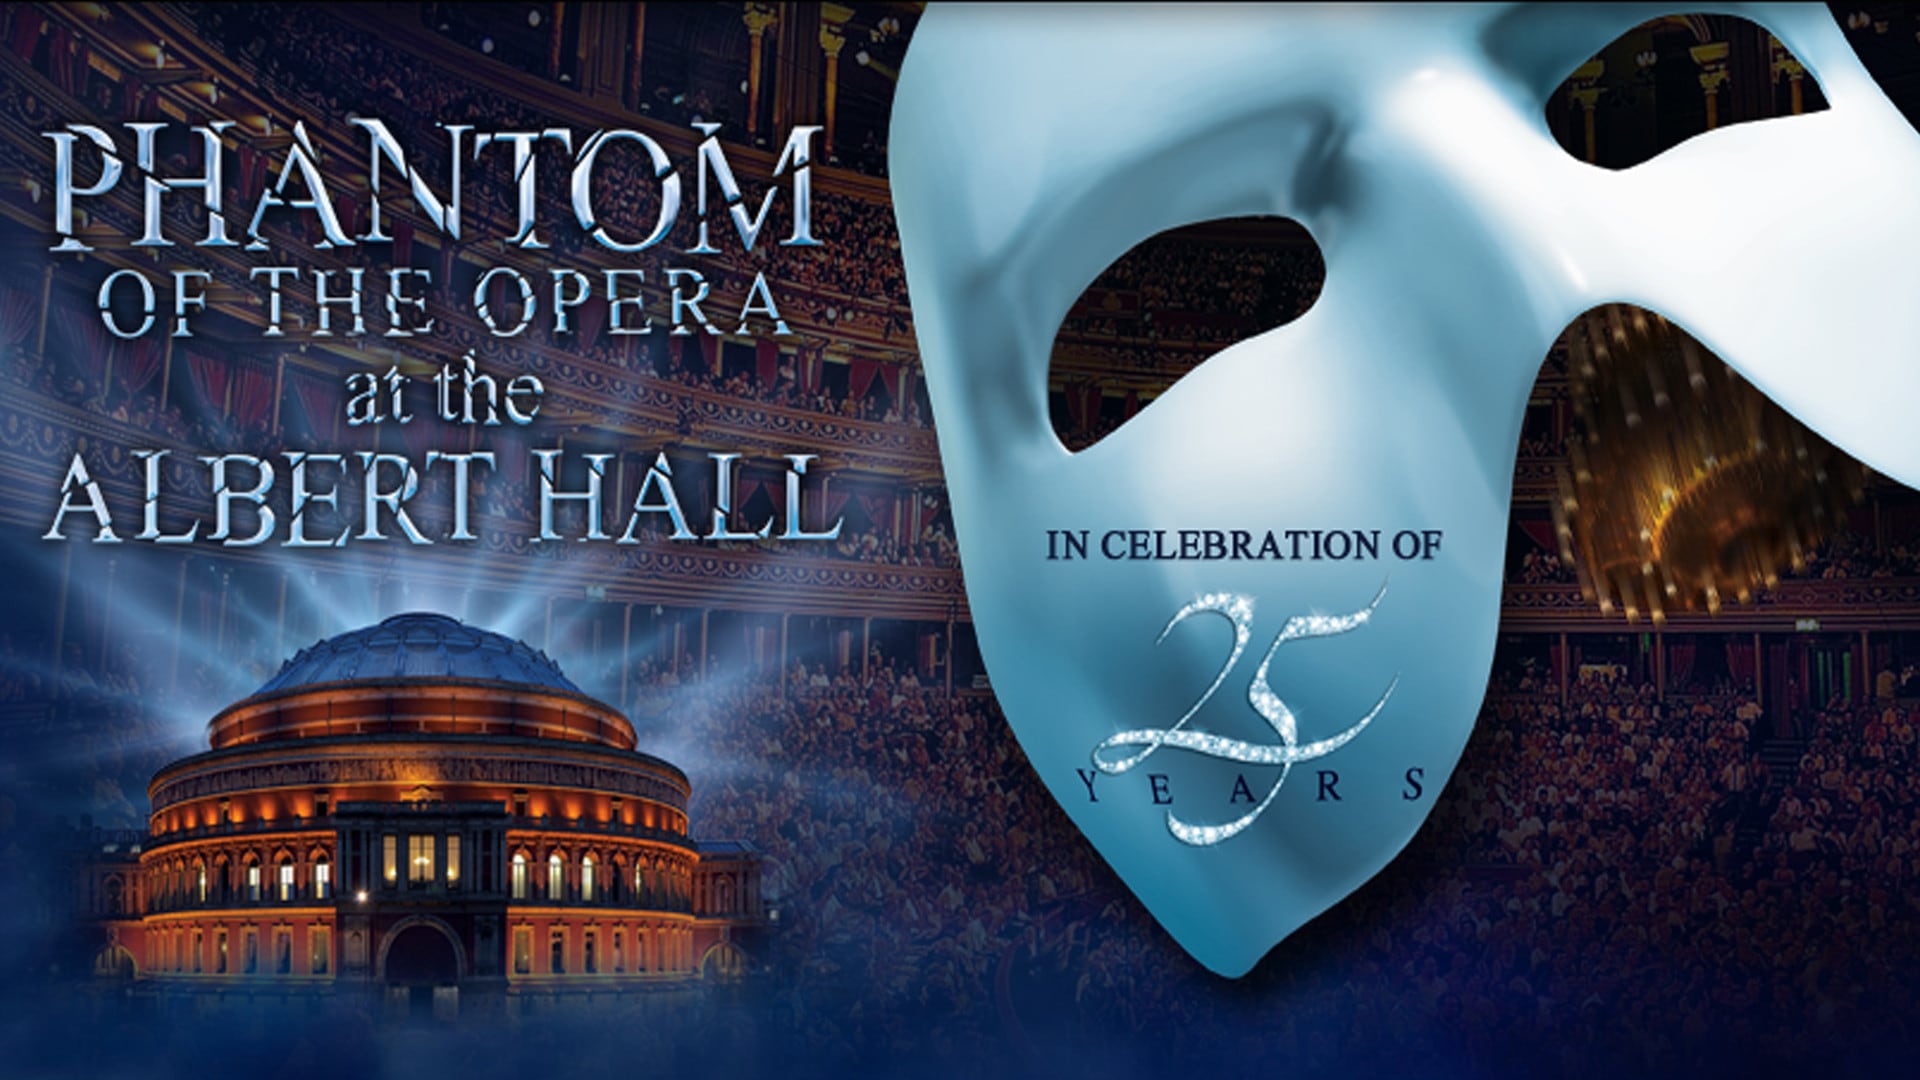 El especial del 25 aniversario de “El fantasma de la ópera” de Andrew Lloyd Webber se transmitirá de forma gratuita